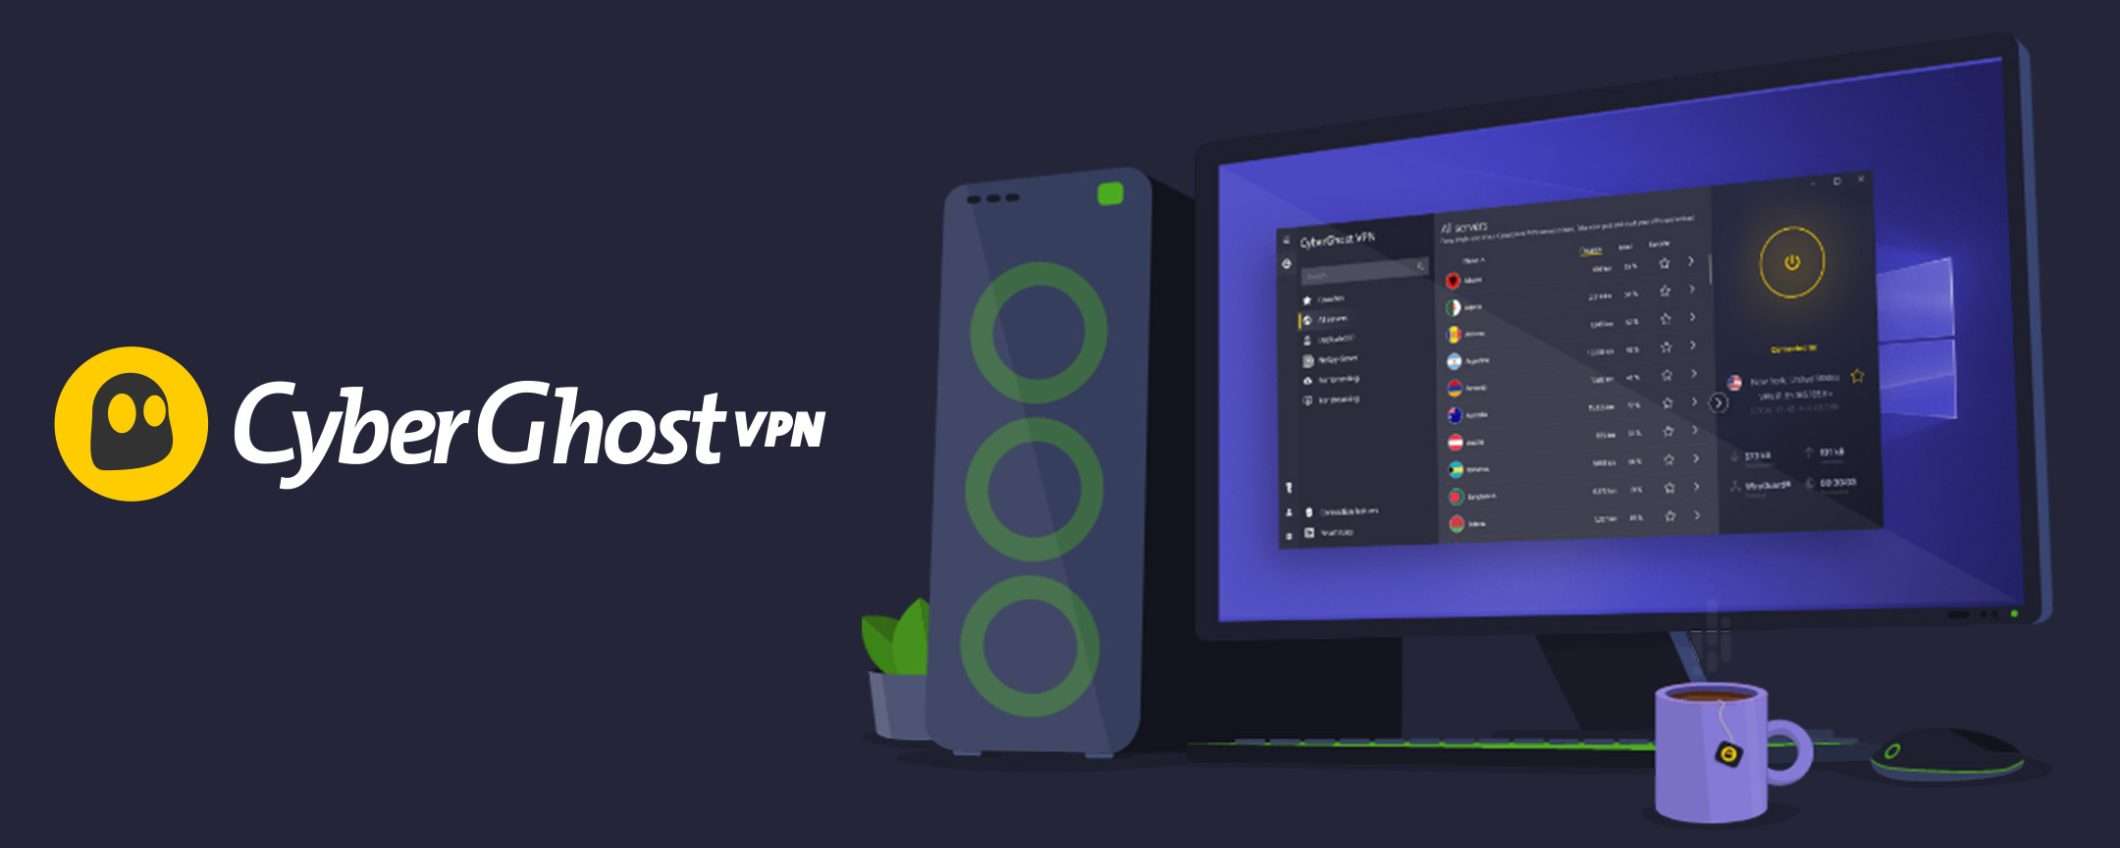 VPN semplice ed economica: CyberGhost a poco più di 2€ mensili